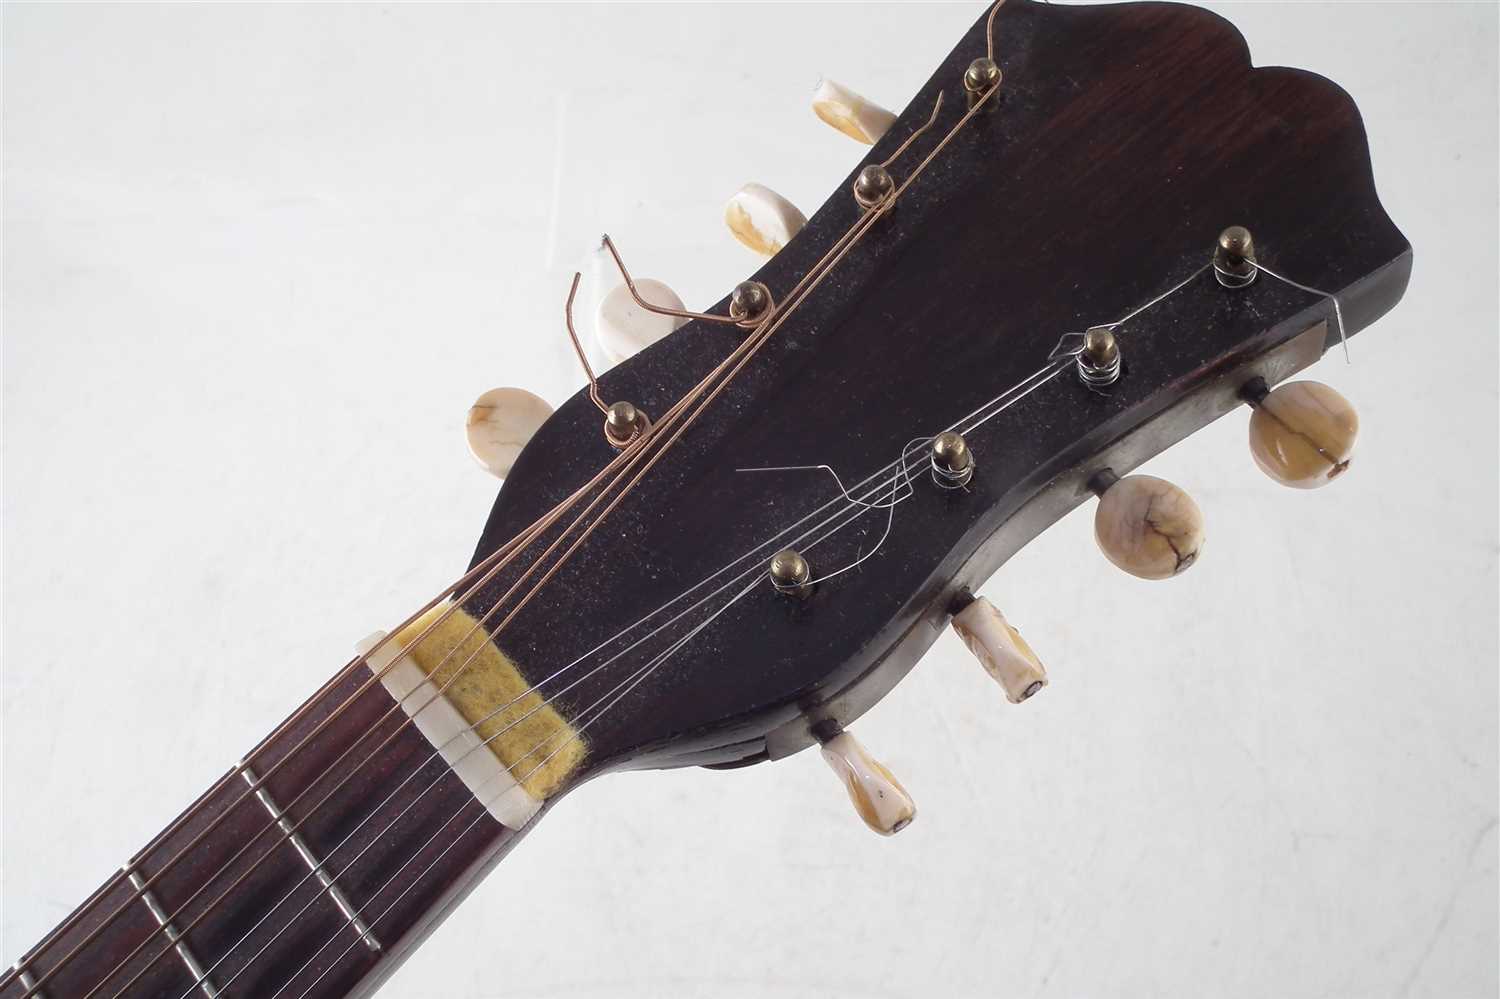 Bowl back mandolin in case. - Image 9 of 11